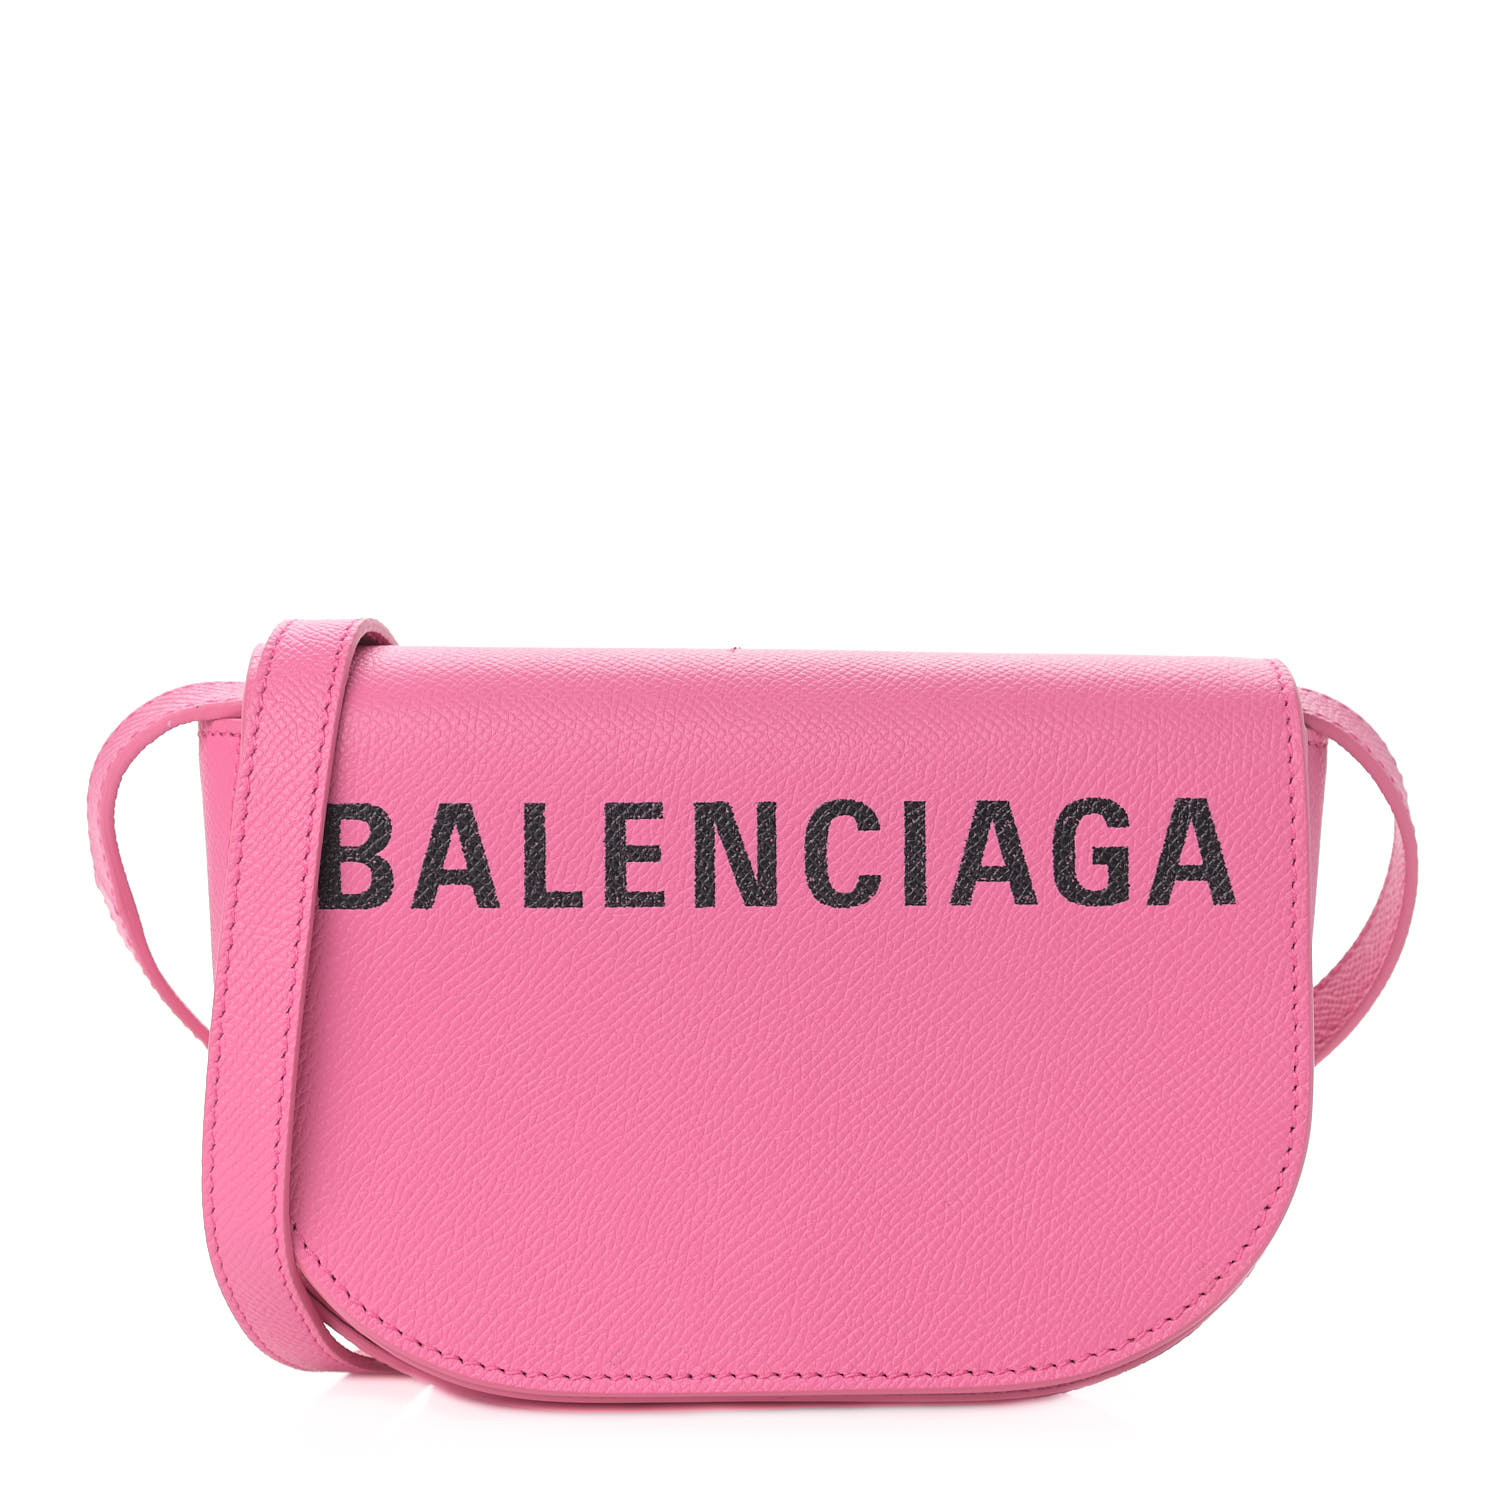 Jeg bærer tøj eksplicit Manners BALENCIAGA Grained Calfskin Logo Print Ville Day Bag Acid Pink 908555 |  FASHIONPHILE